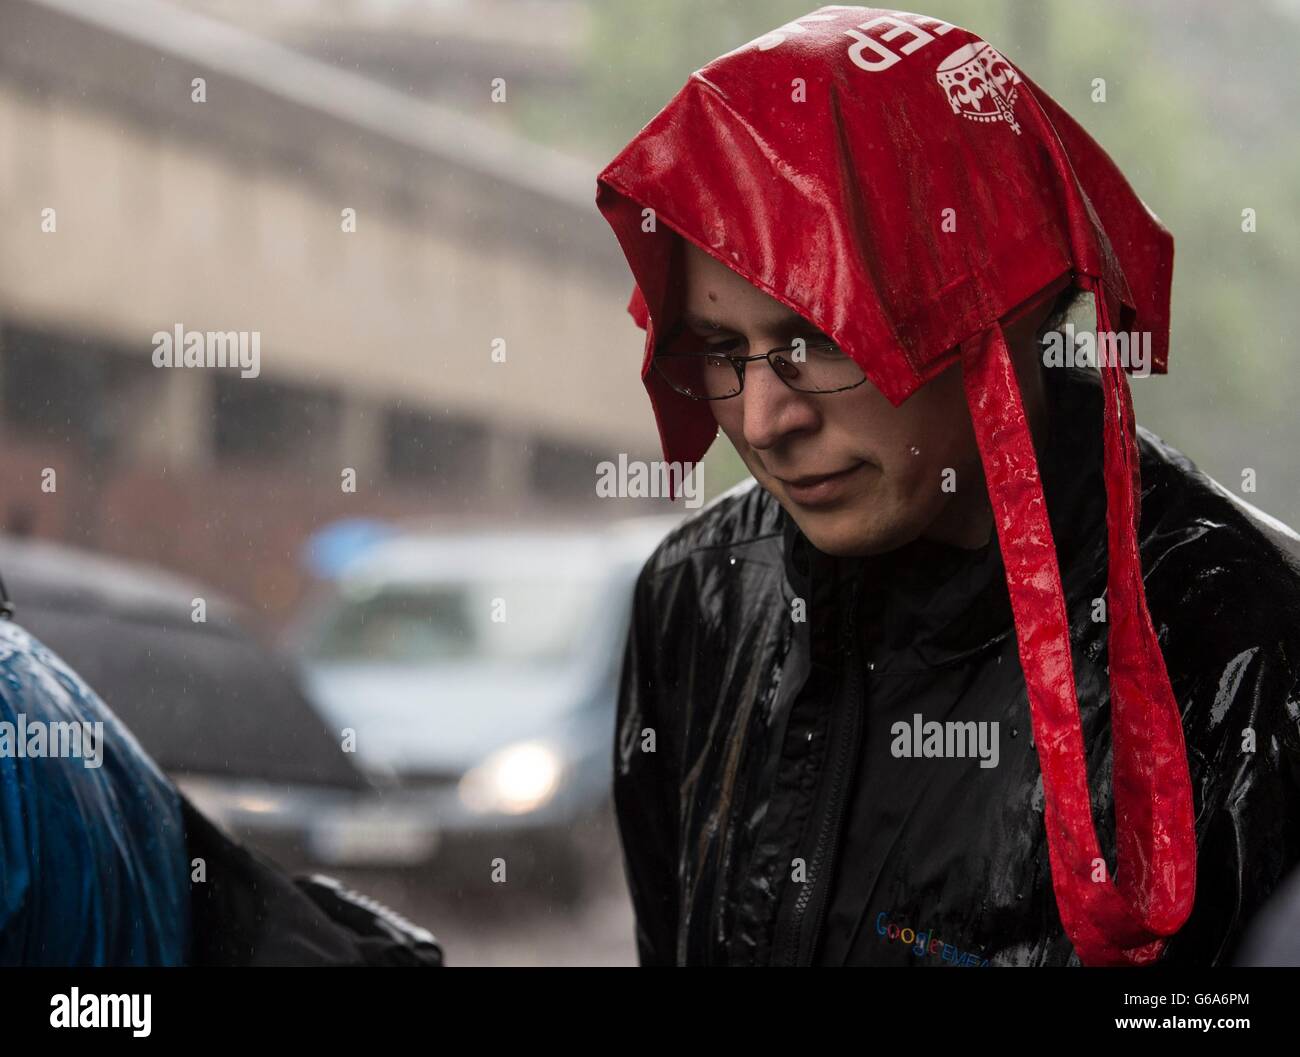 Menschen bekommen in einem Regenschauer in der Nähe in der Londoner Barbican gefangen. Stockfoto